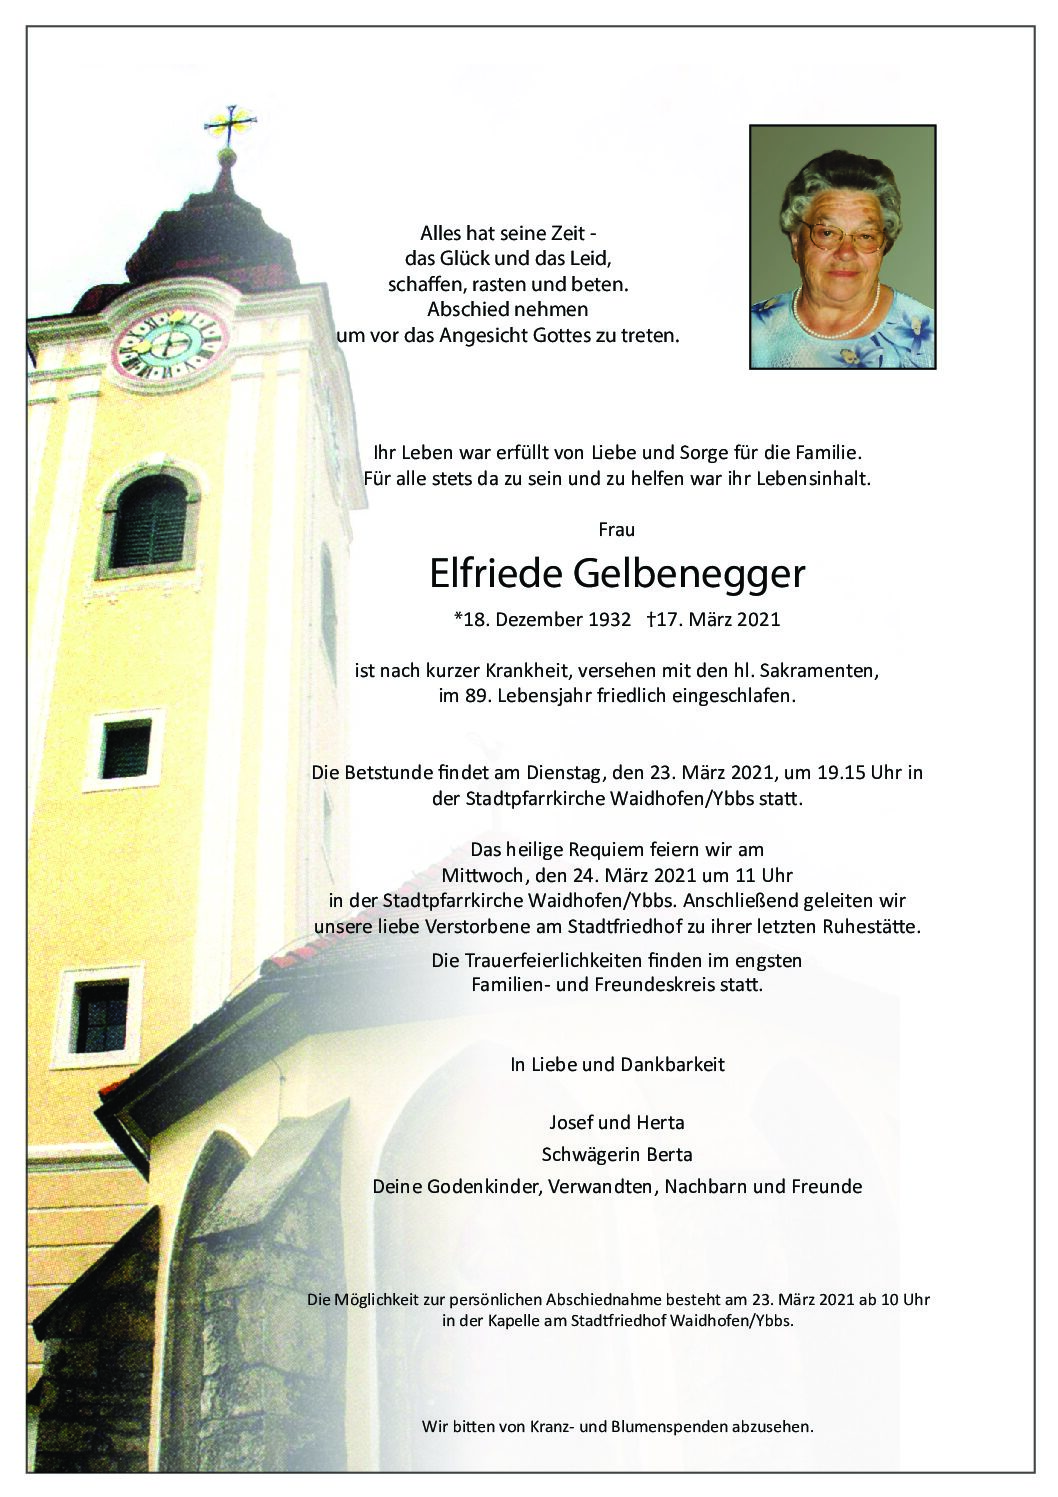 Elfriede Gelbenegger